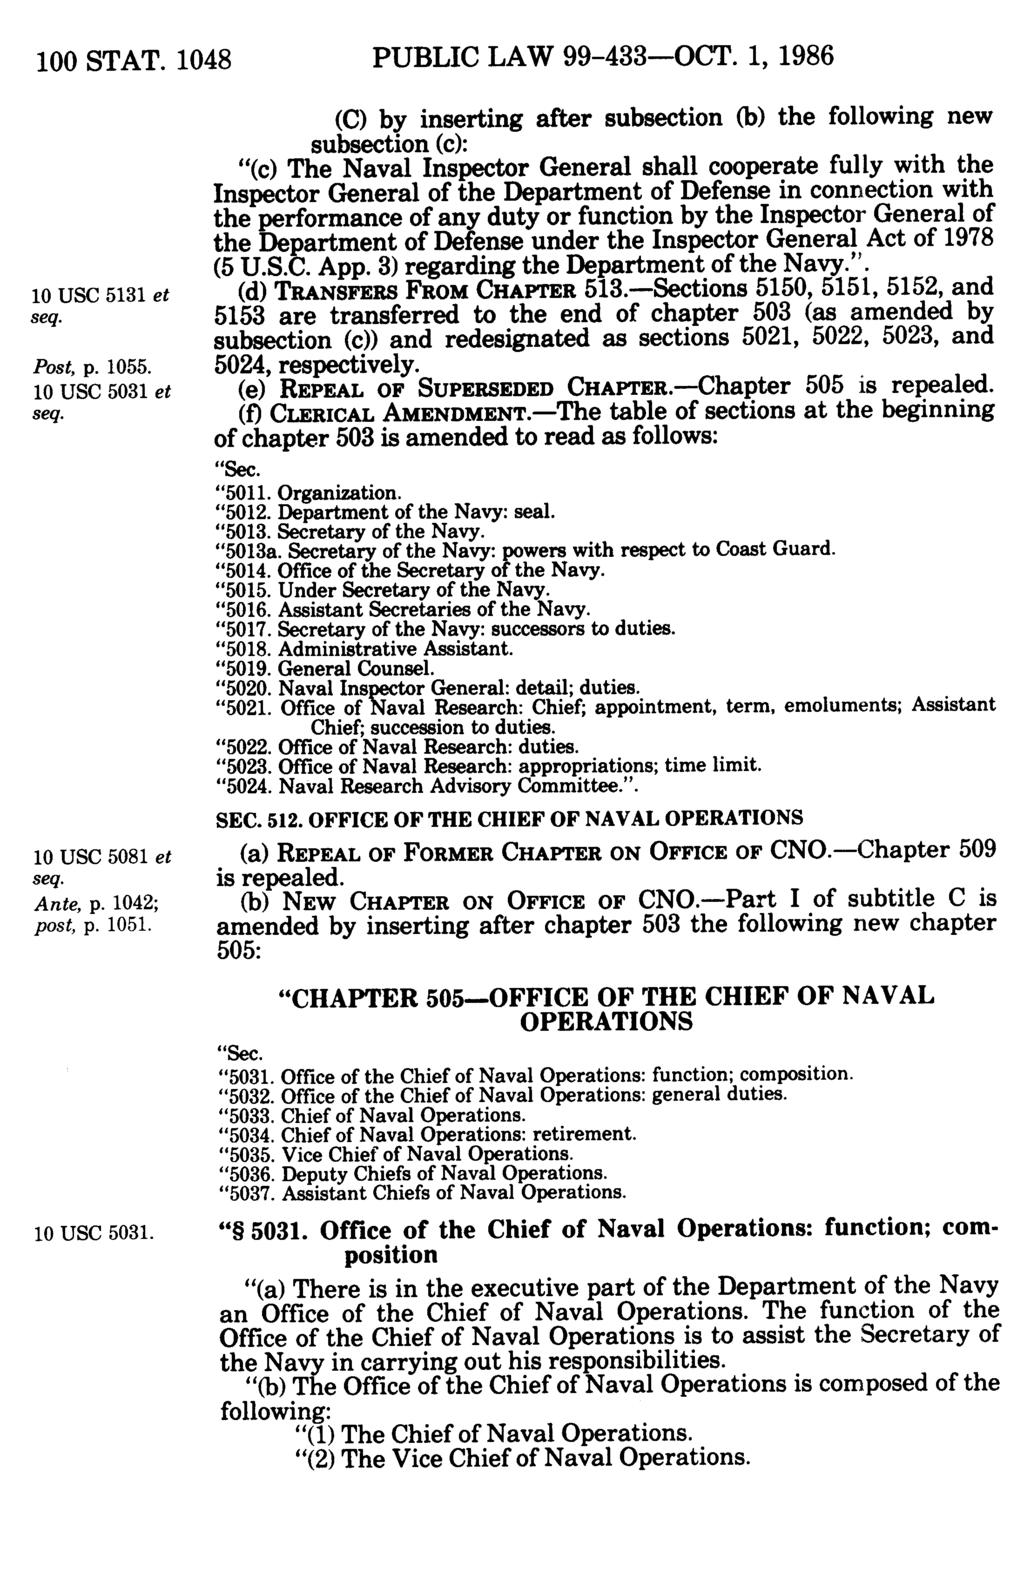 100 STAT. 1048 PUBLIC LAW 99-433-OCT. 1, 1986 10 USC 5131 et seq. Post, p. 1055. 10 USC 5031 